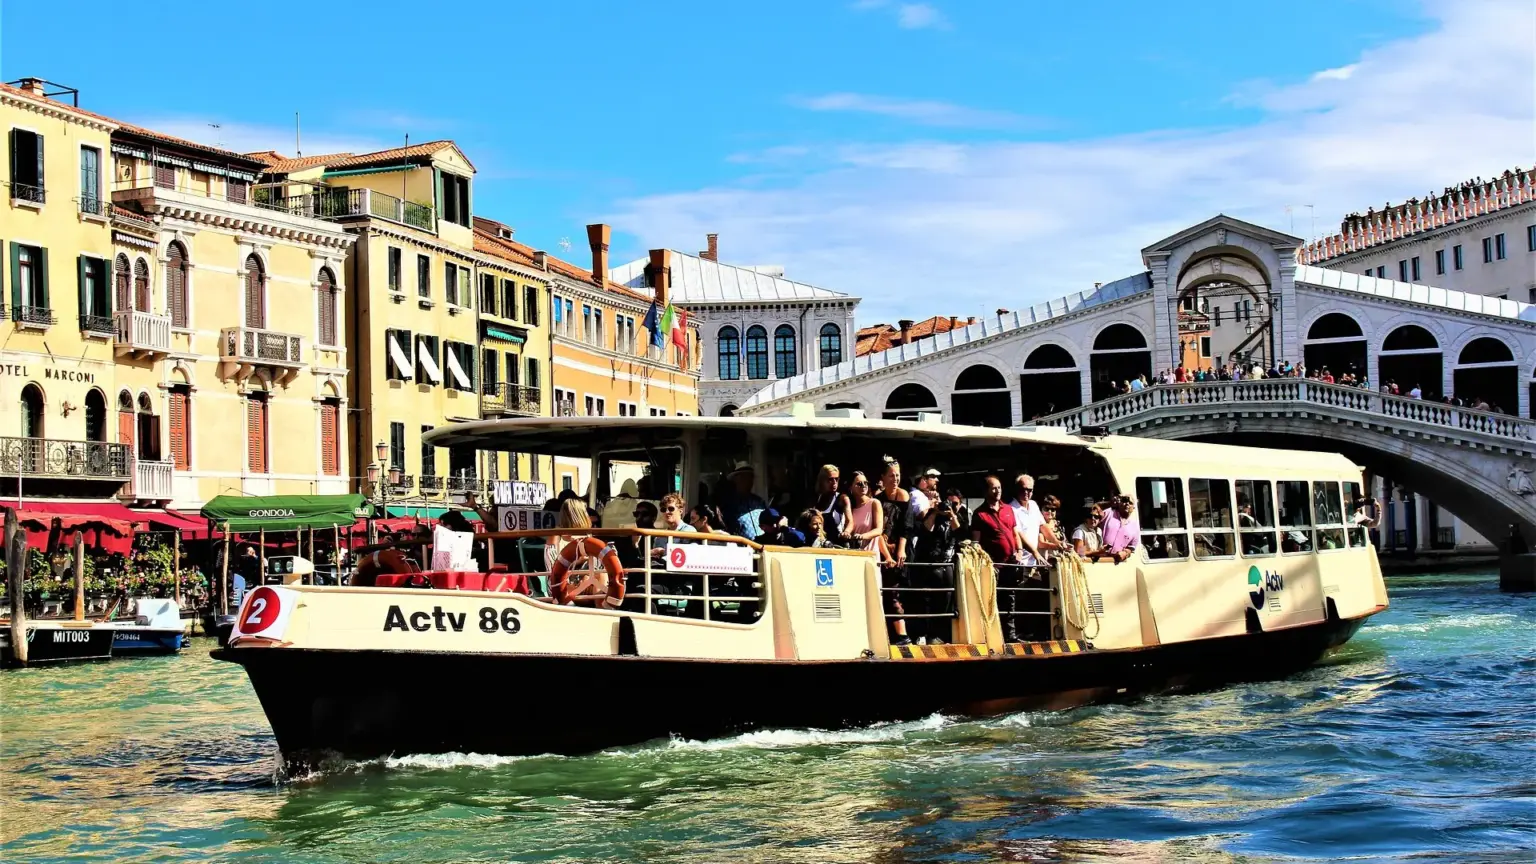 El vaporetto es una parte esencial de la vida cotidiana en Venecia.